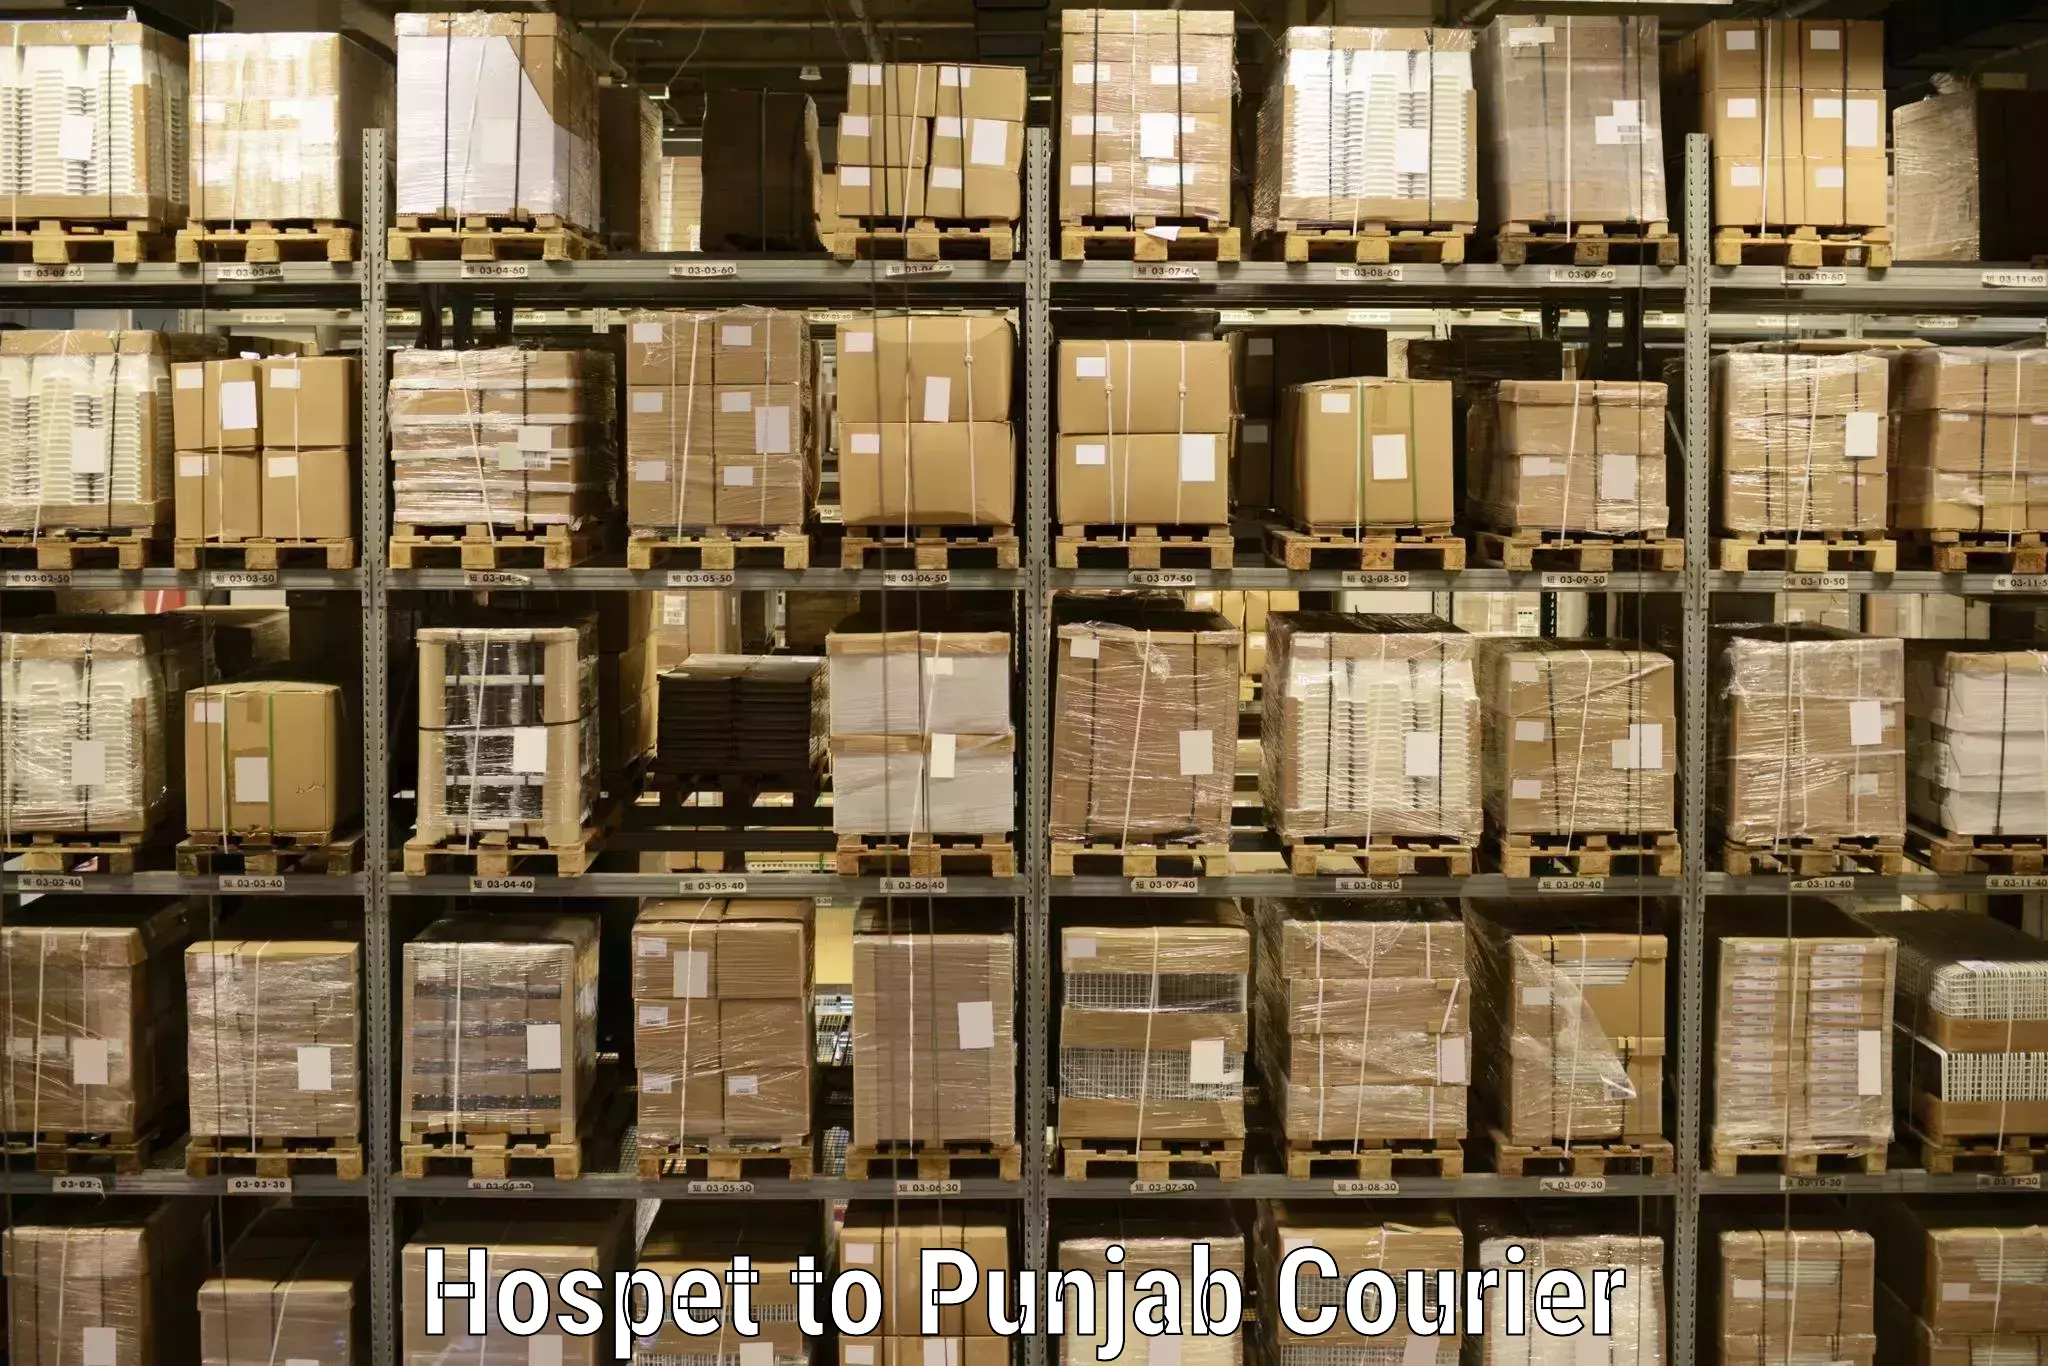 Door-to-door shipment in Hospet to Patiala